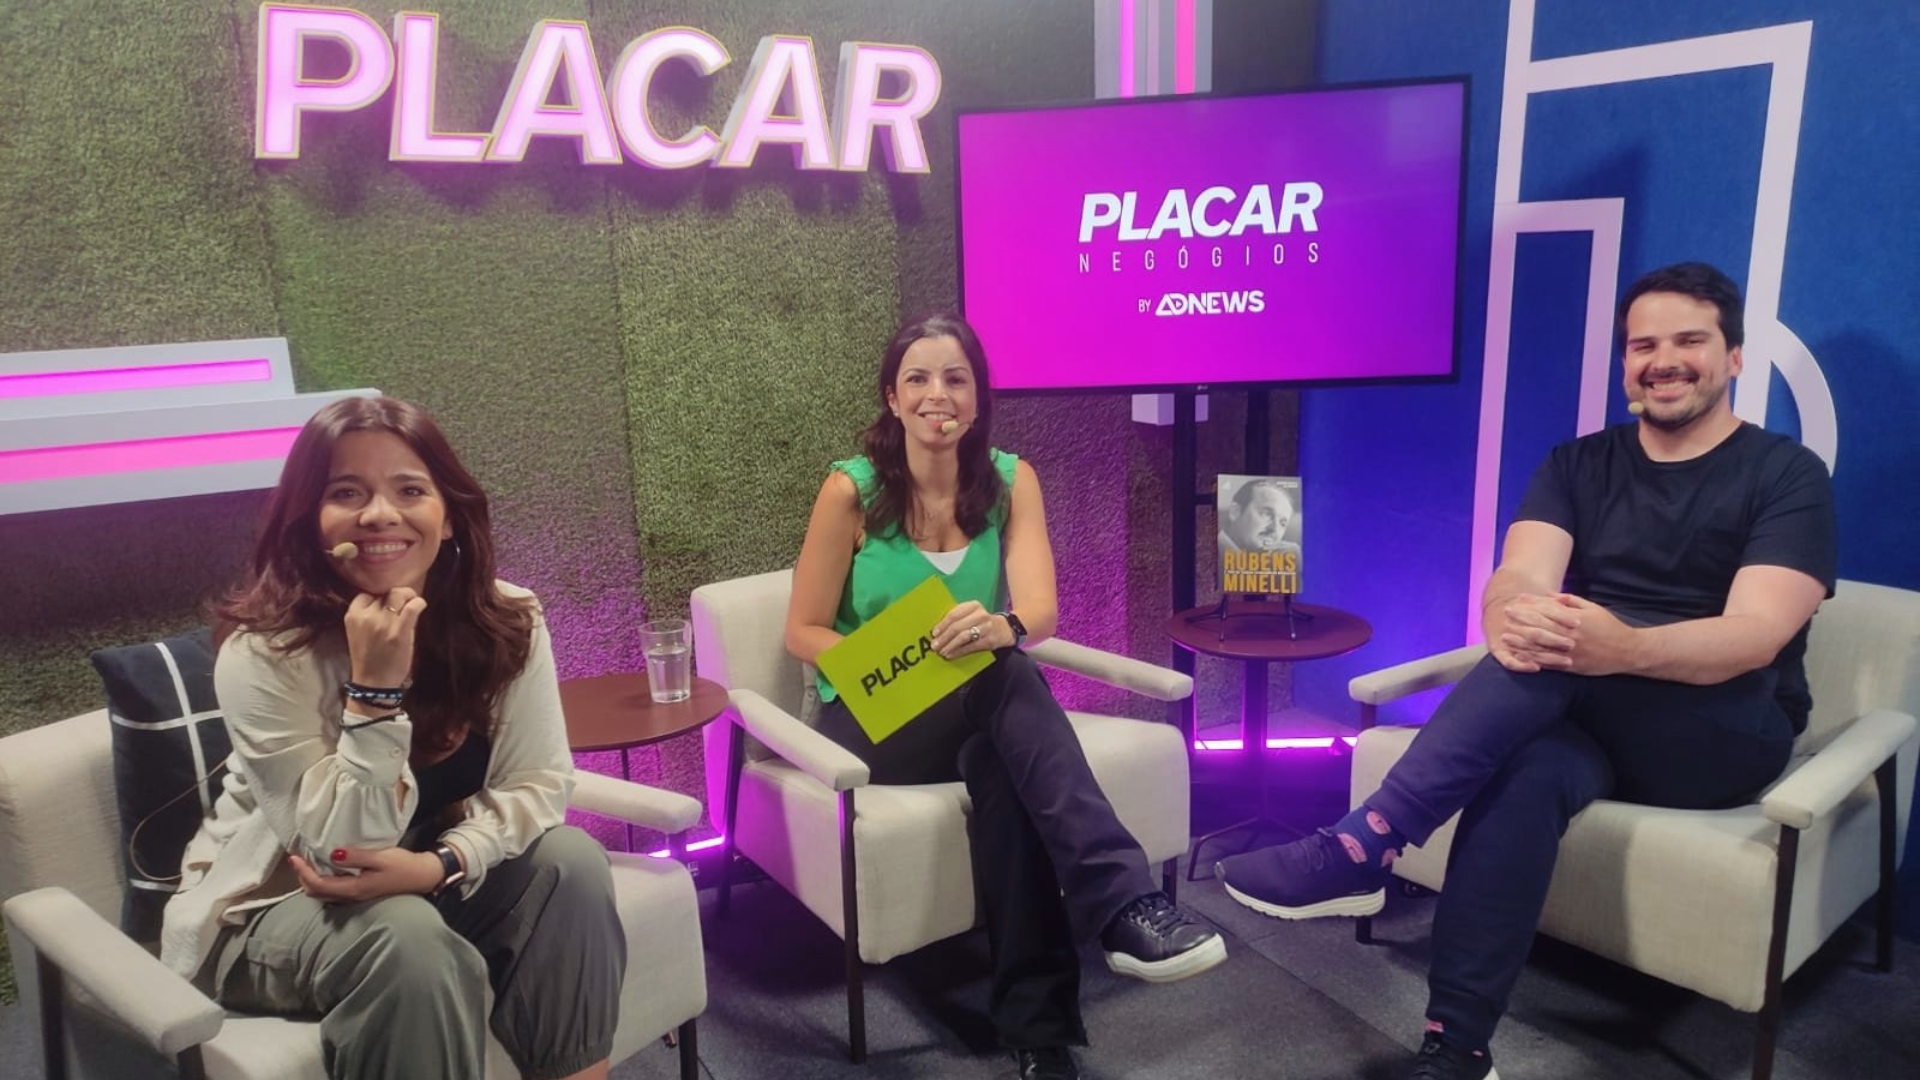 Sicredi em campo: João Clark reforça apoio da marca ao futebol no PLACAR Negócios by Adnews